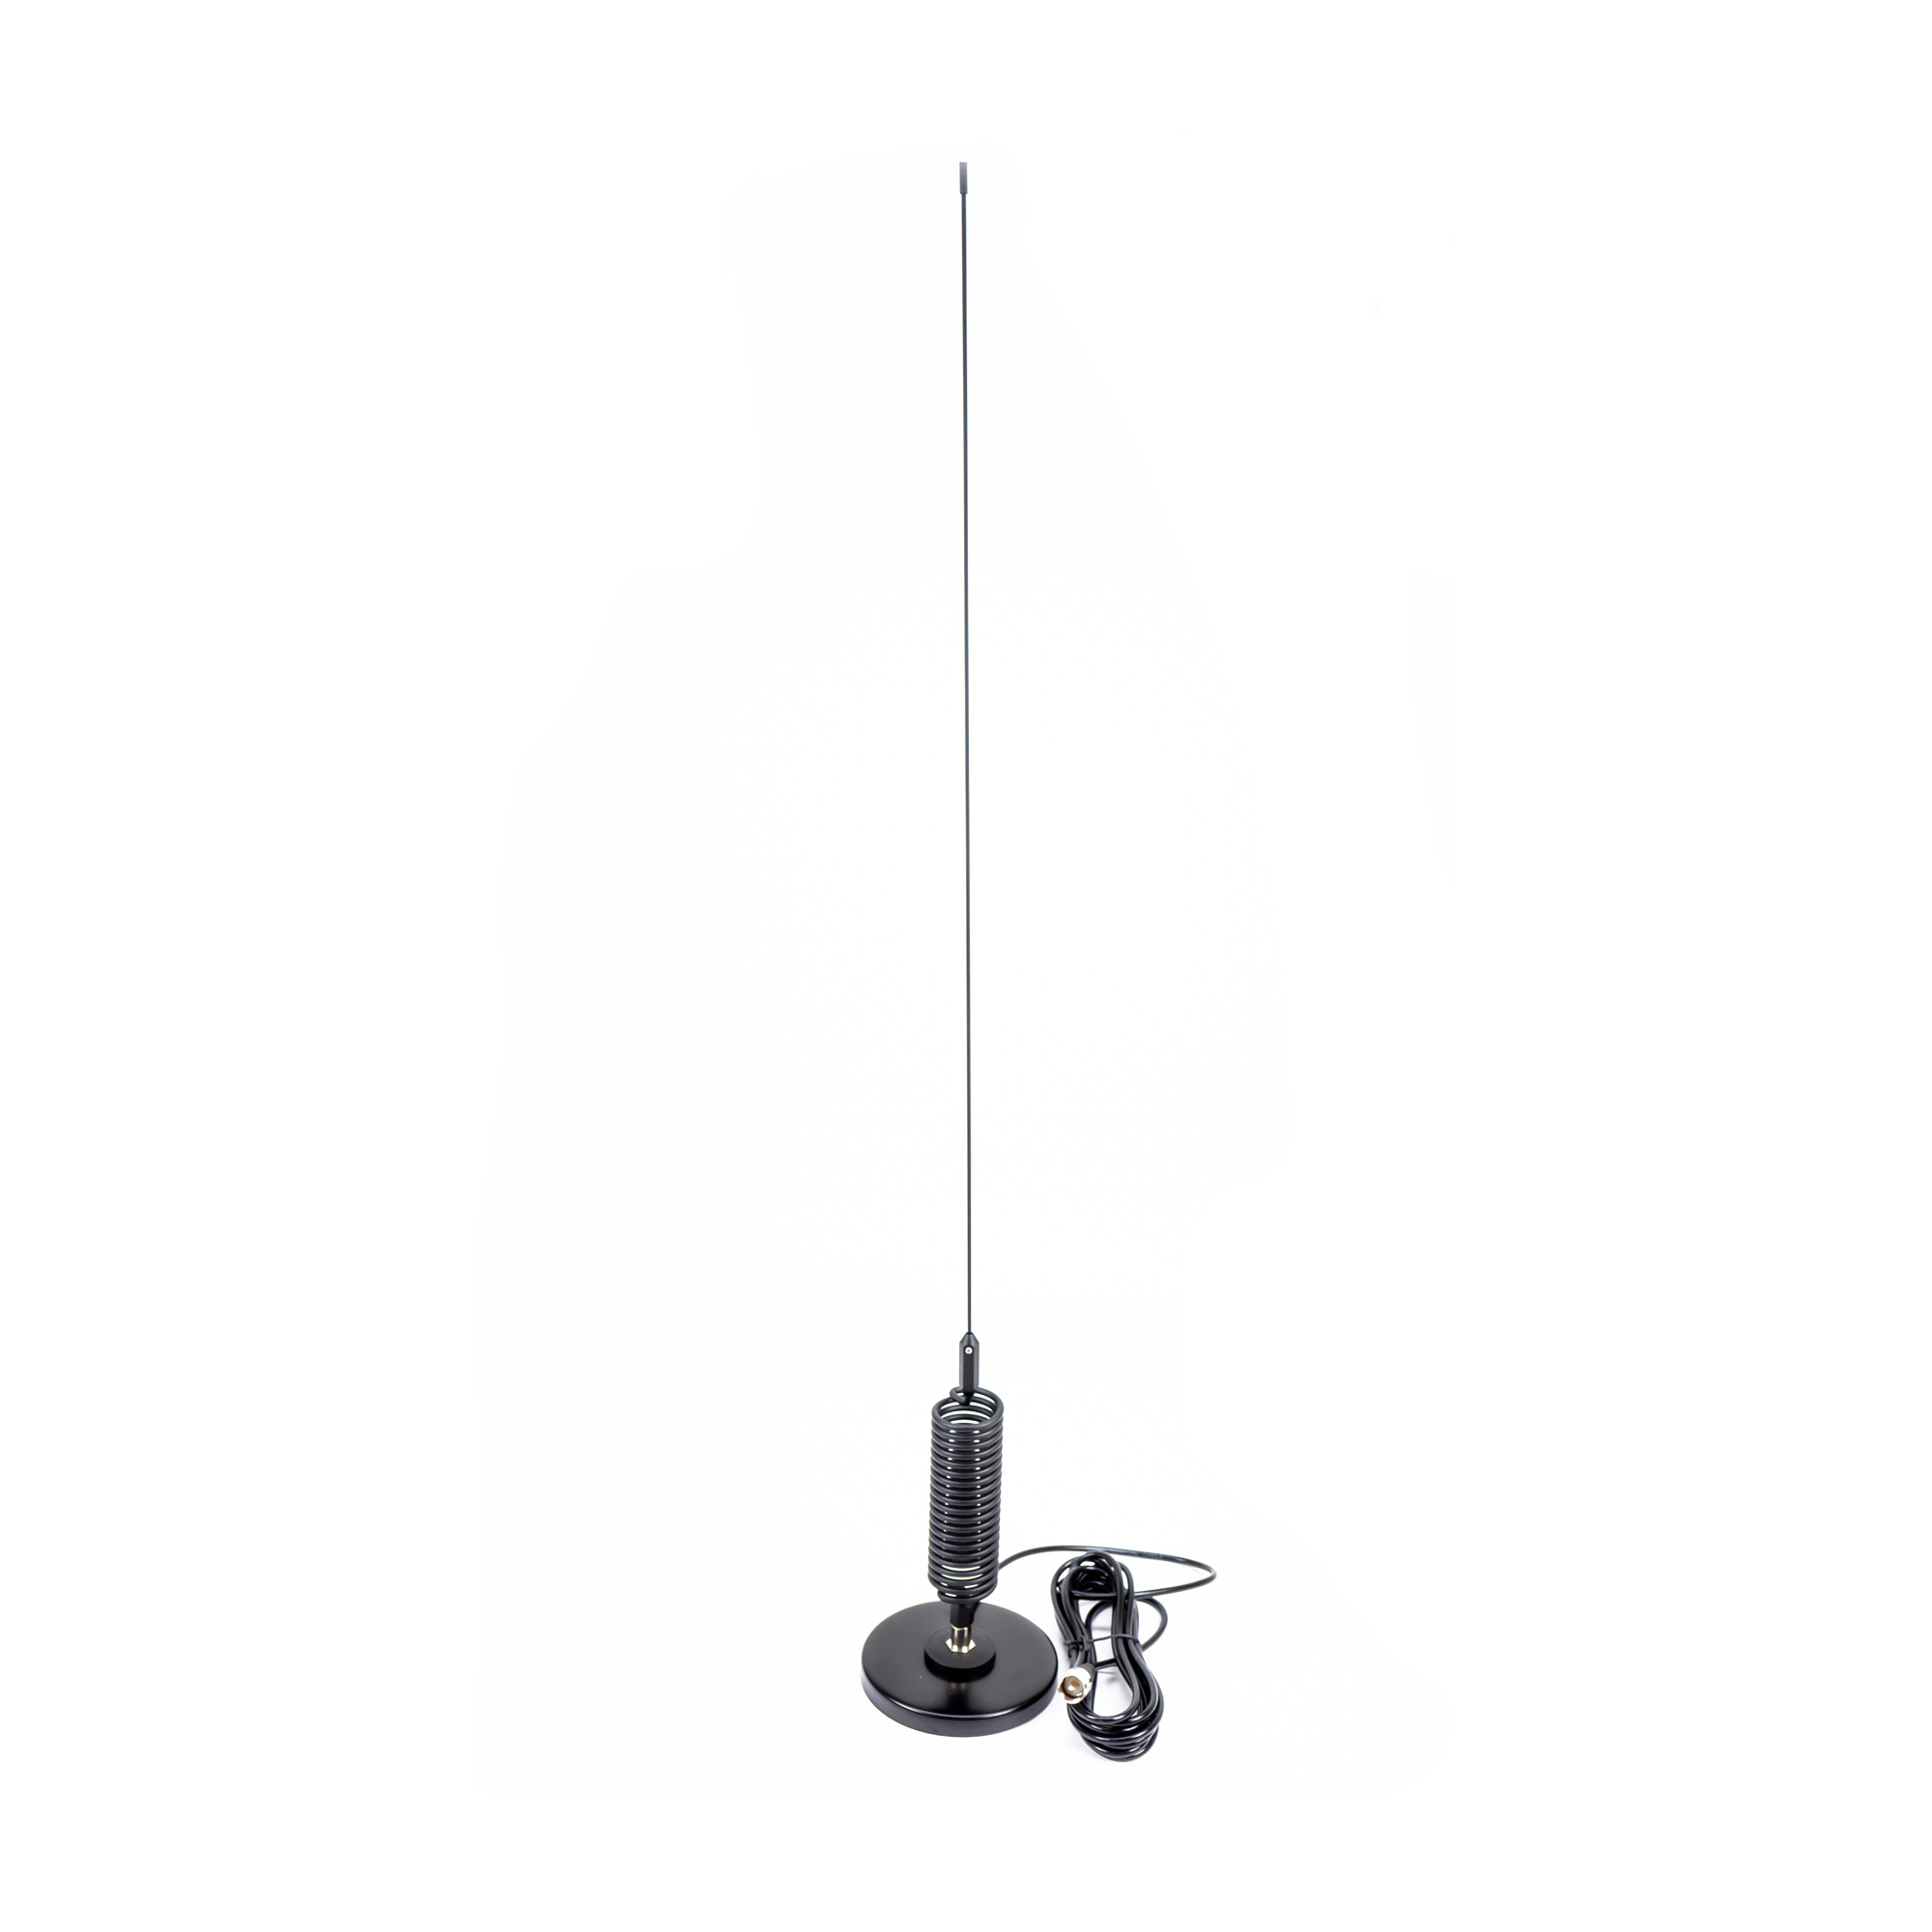 Antena CB Moonraker Mini Tornado cu magnet 125 mm, cablu 4m si mufa PL259